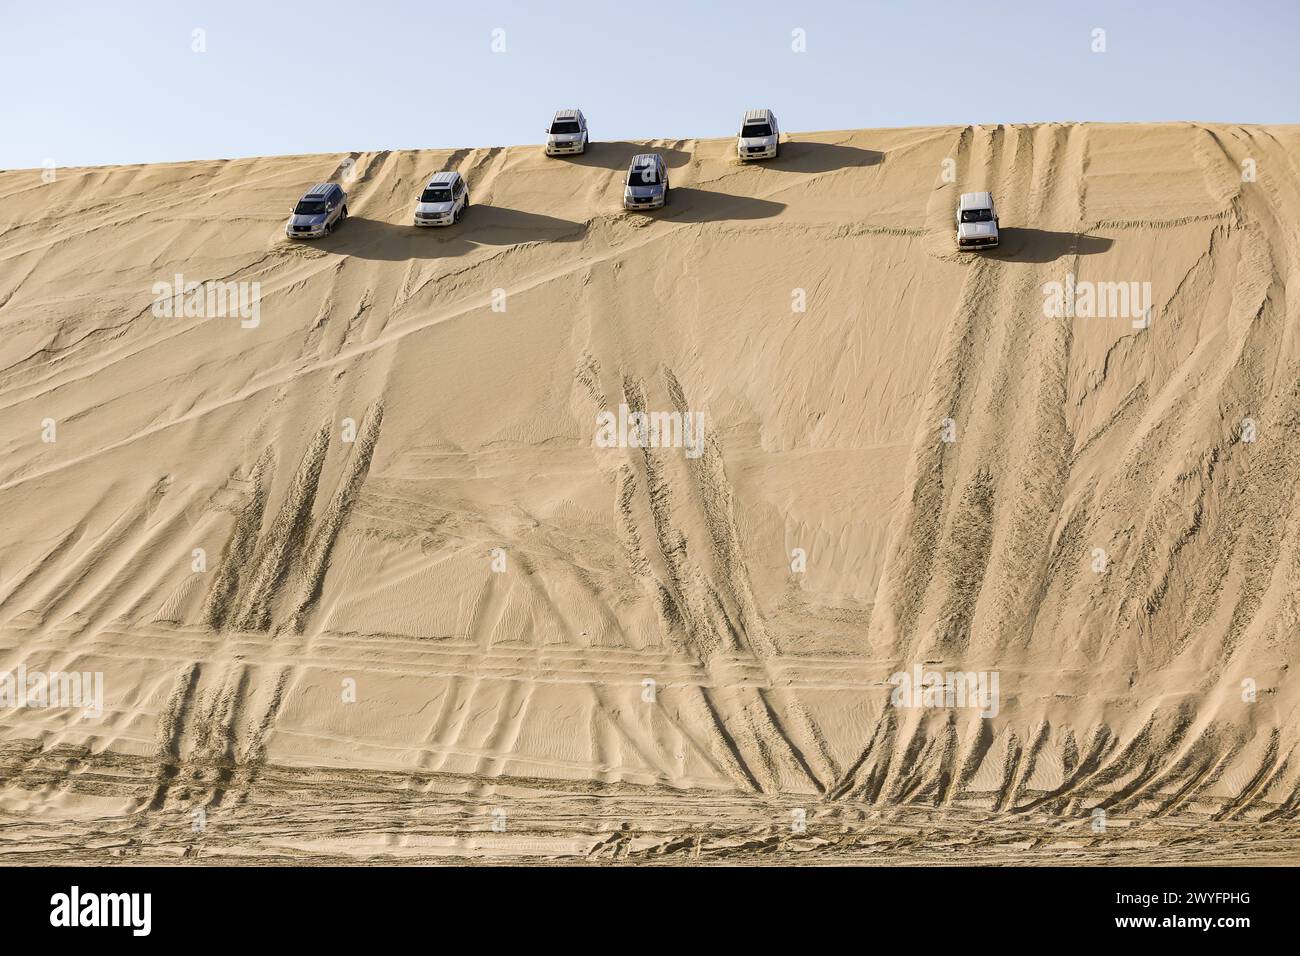 Conducenti di veicoli commerciali sportivi su dune di sabbia. Sport avventuroso, che i piloti esperti amano la natura e la guida stessa. Foto Stock